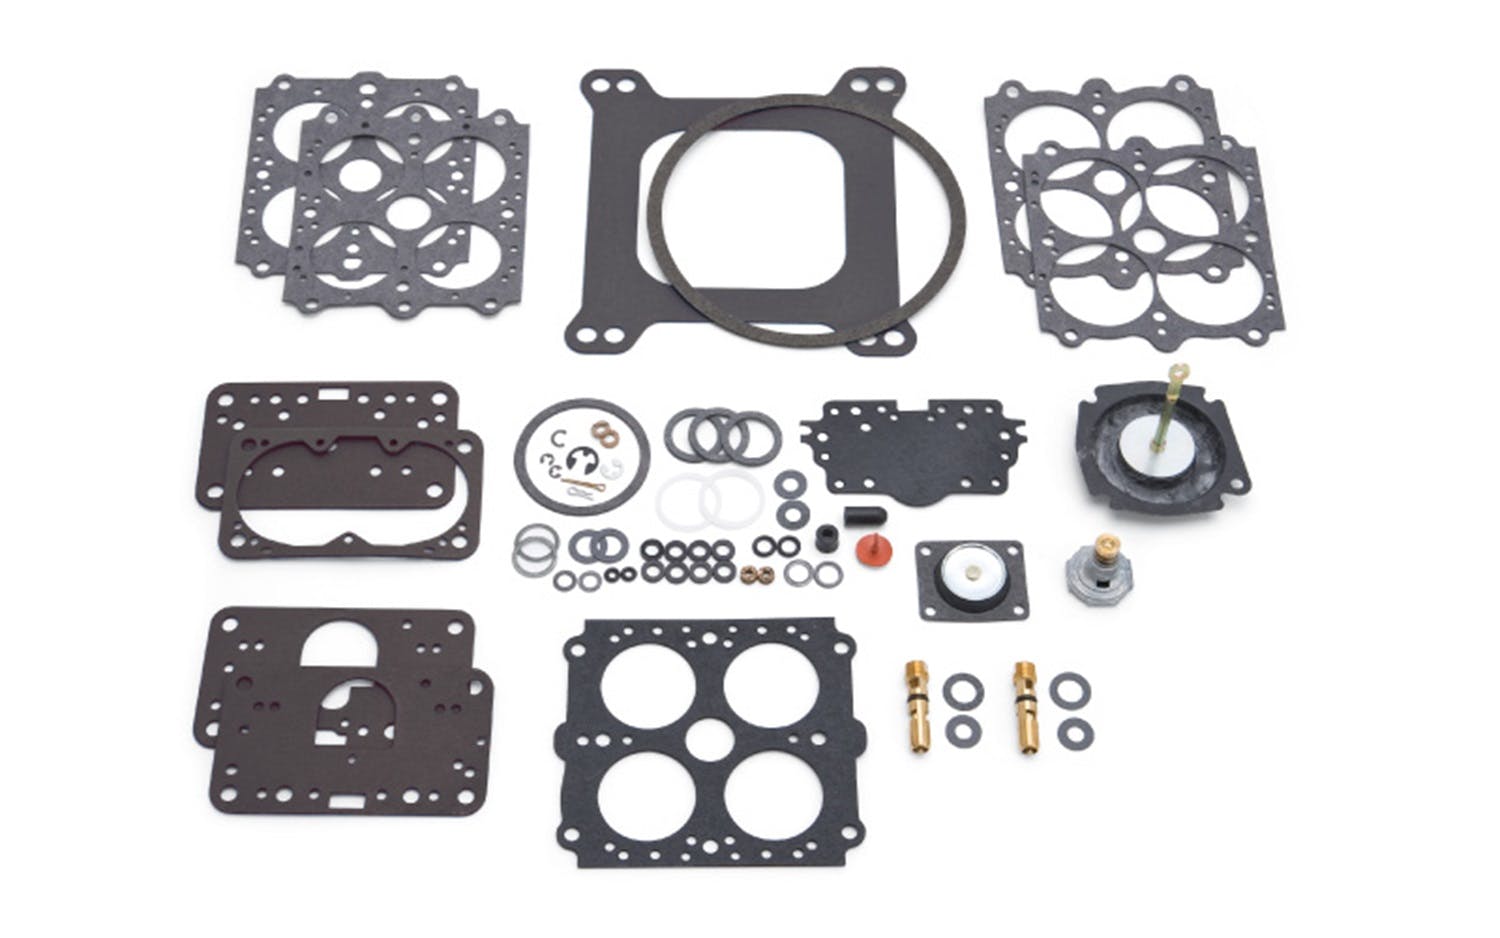 Edelbrock 12750 Rebuild and Maintenance Kit for Most 4160-Style Carburetors